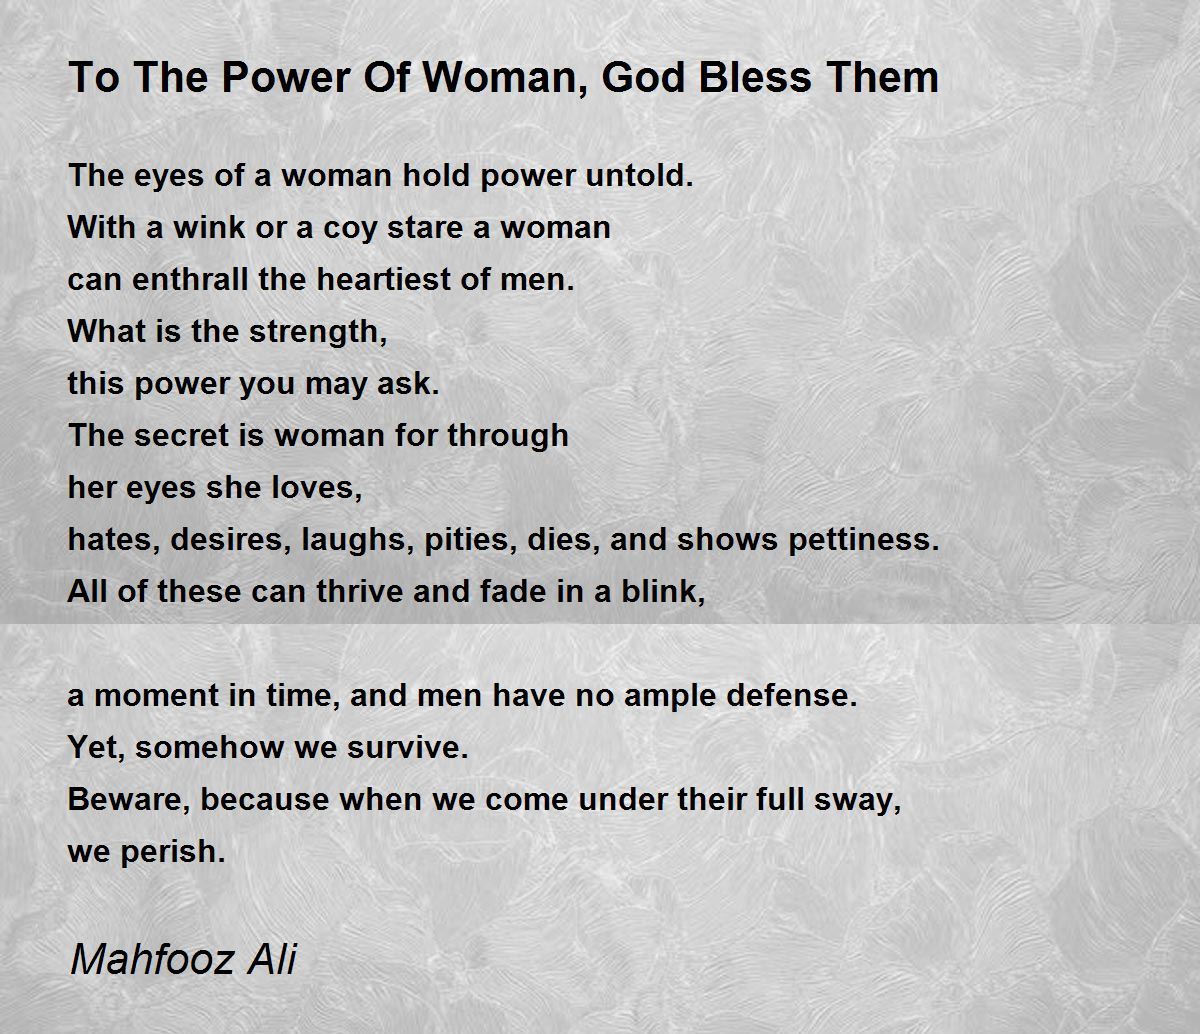 The Power Of A Woman - The Power Of A Woman Poem by Blessing Ekpe